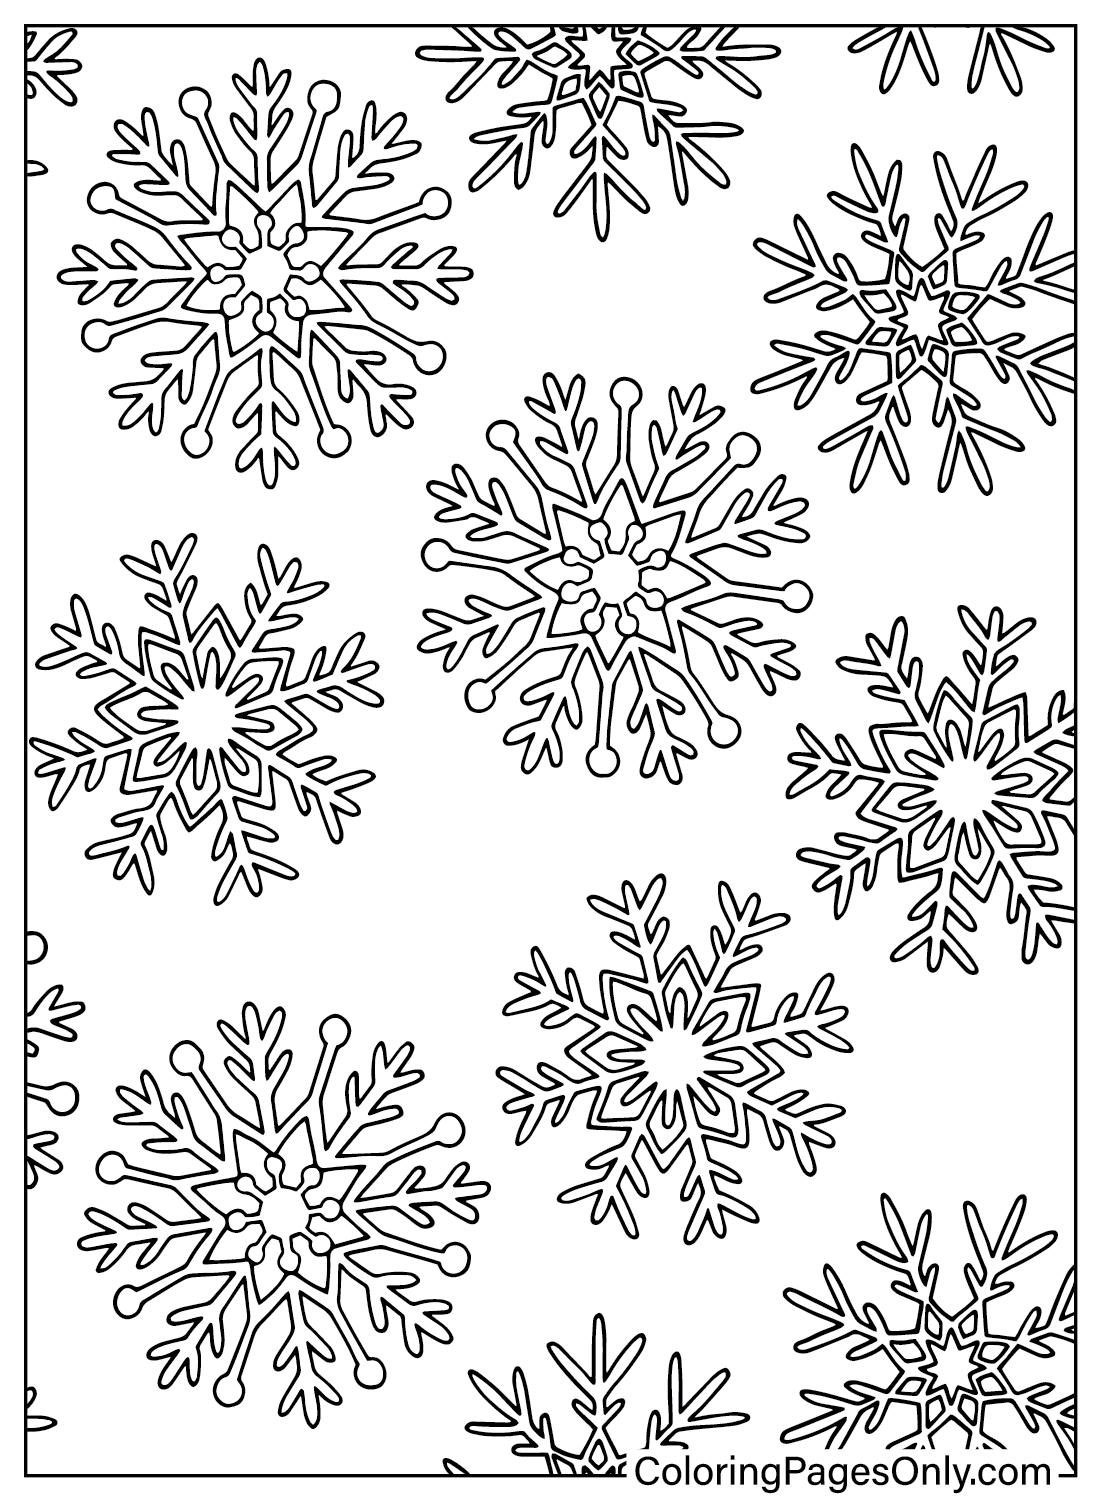 Раскраска Снежинка для дошкольников из книги «Природа и времена года»